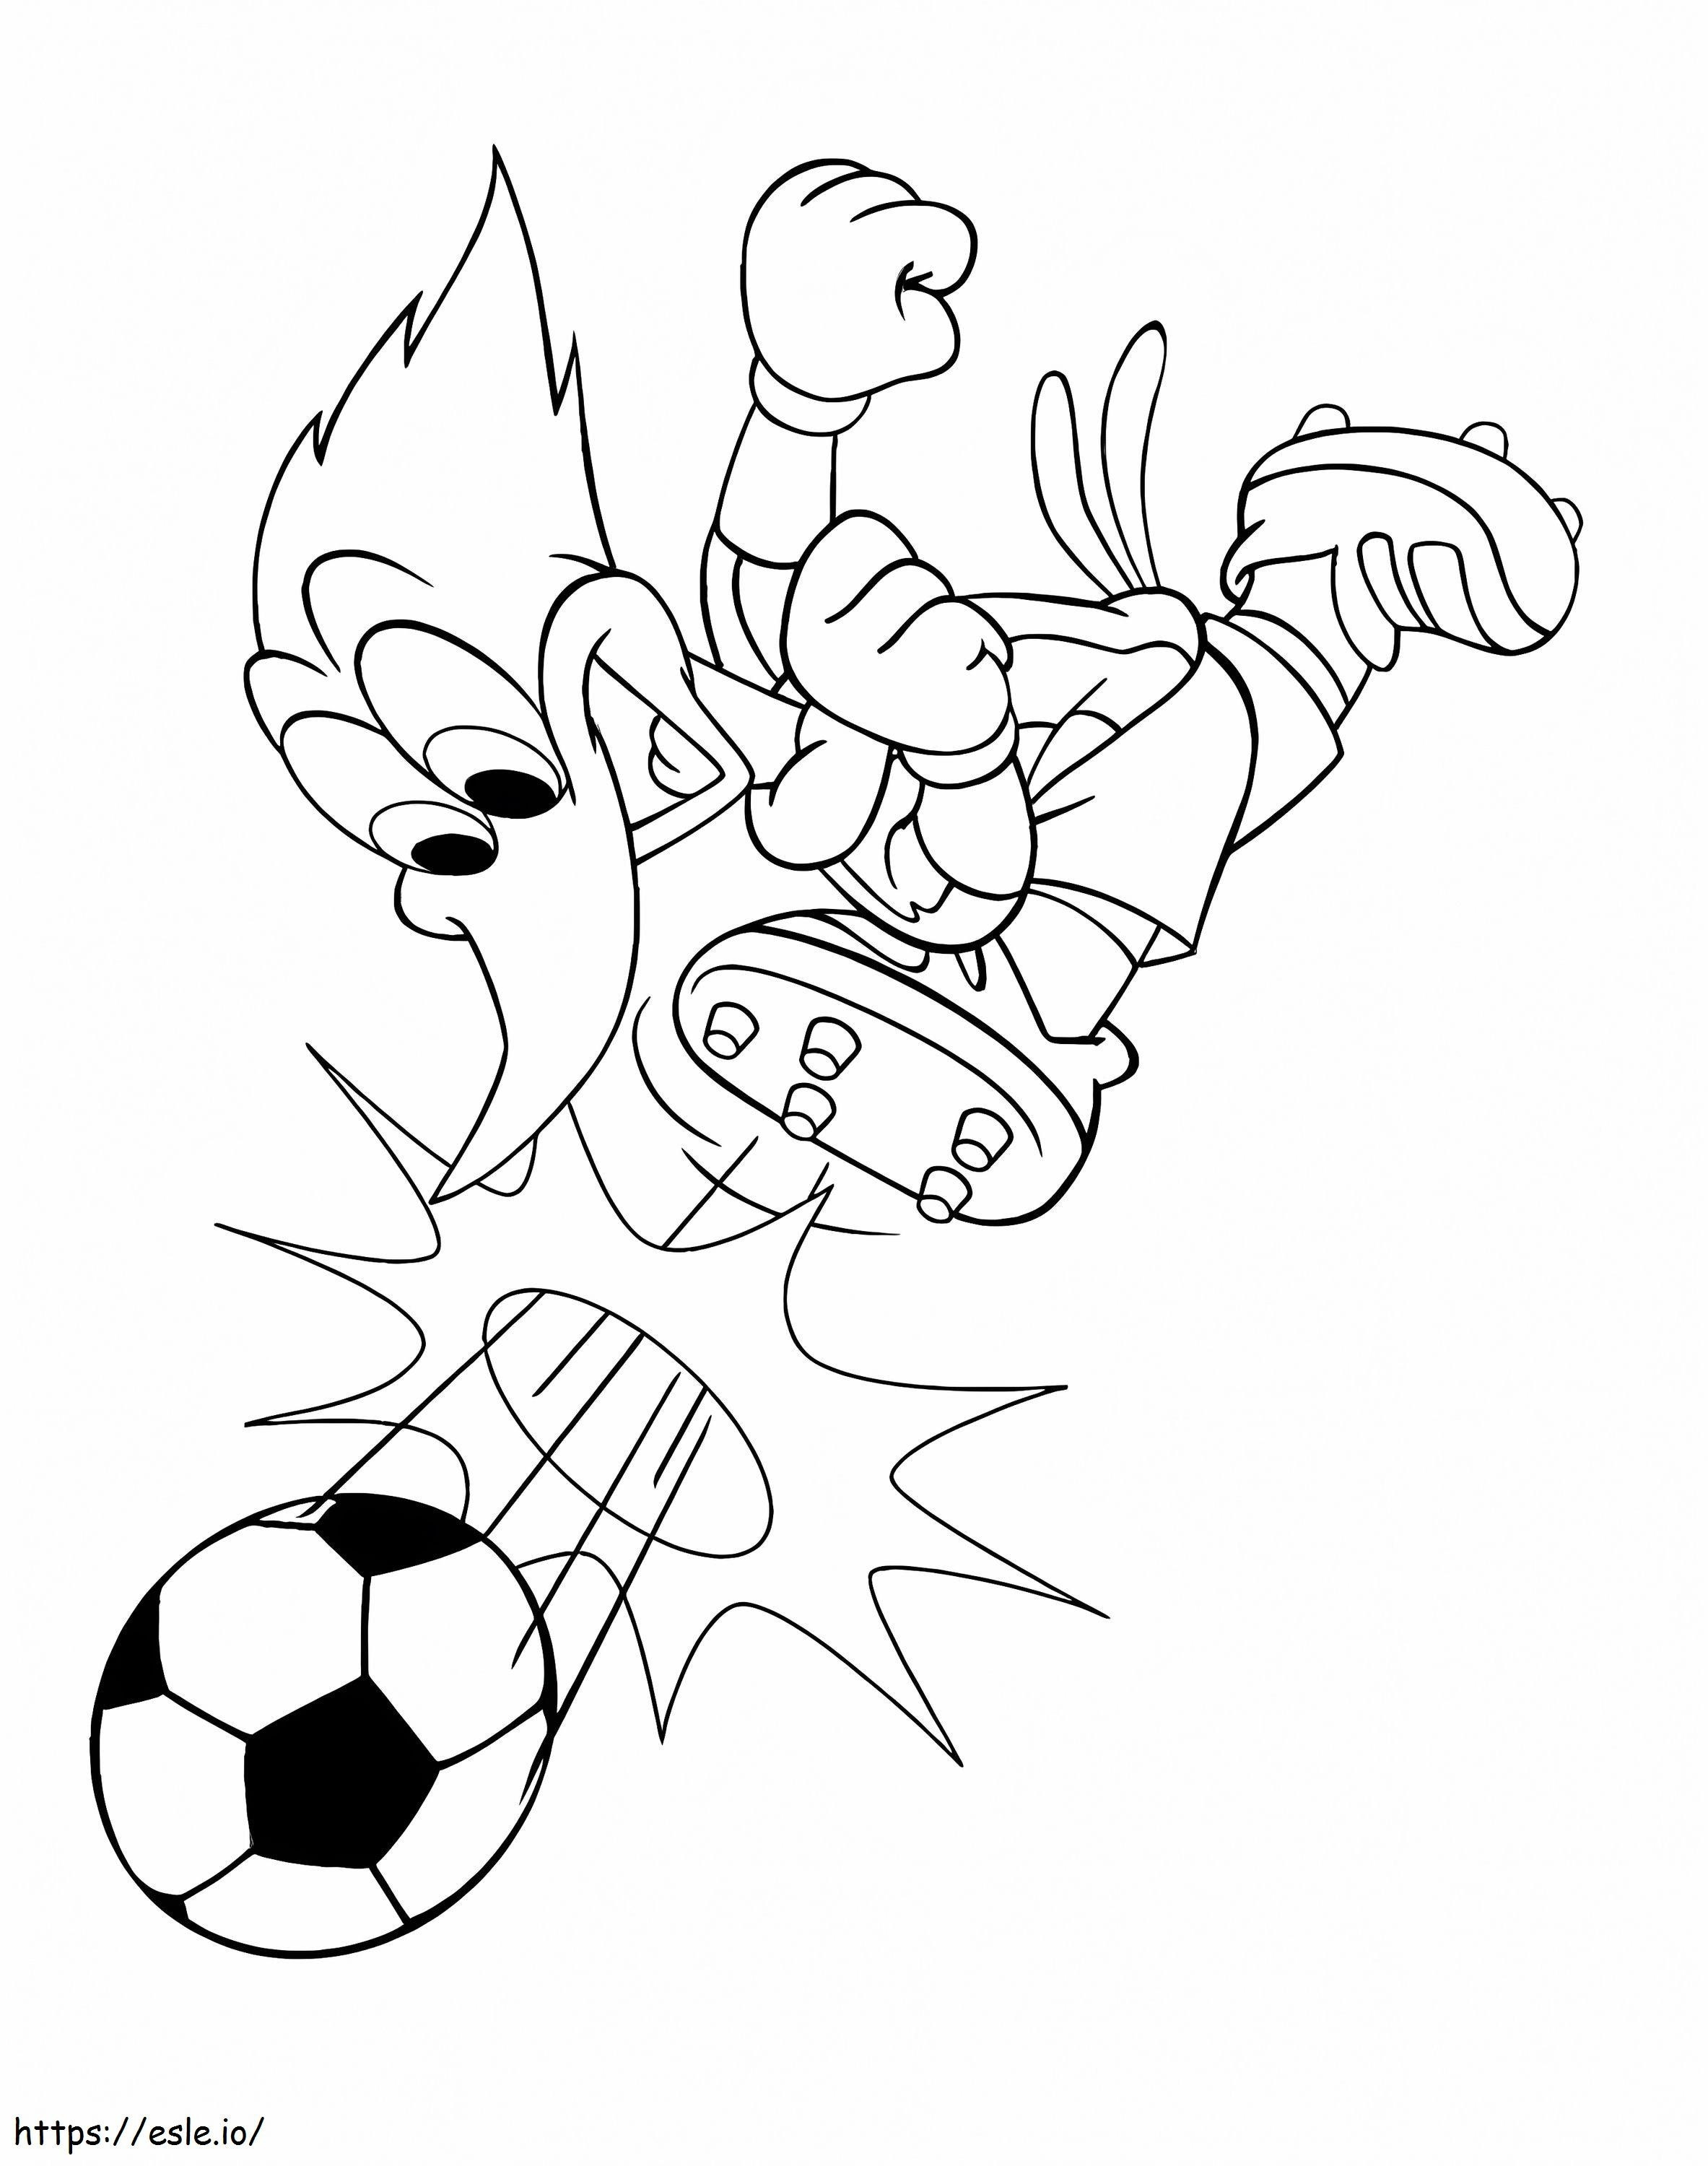 Pica-pau jogando futebol para colorir